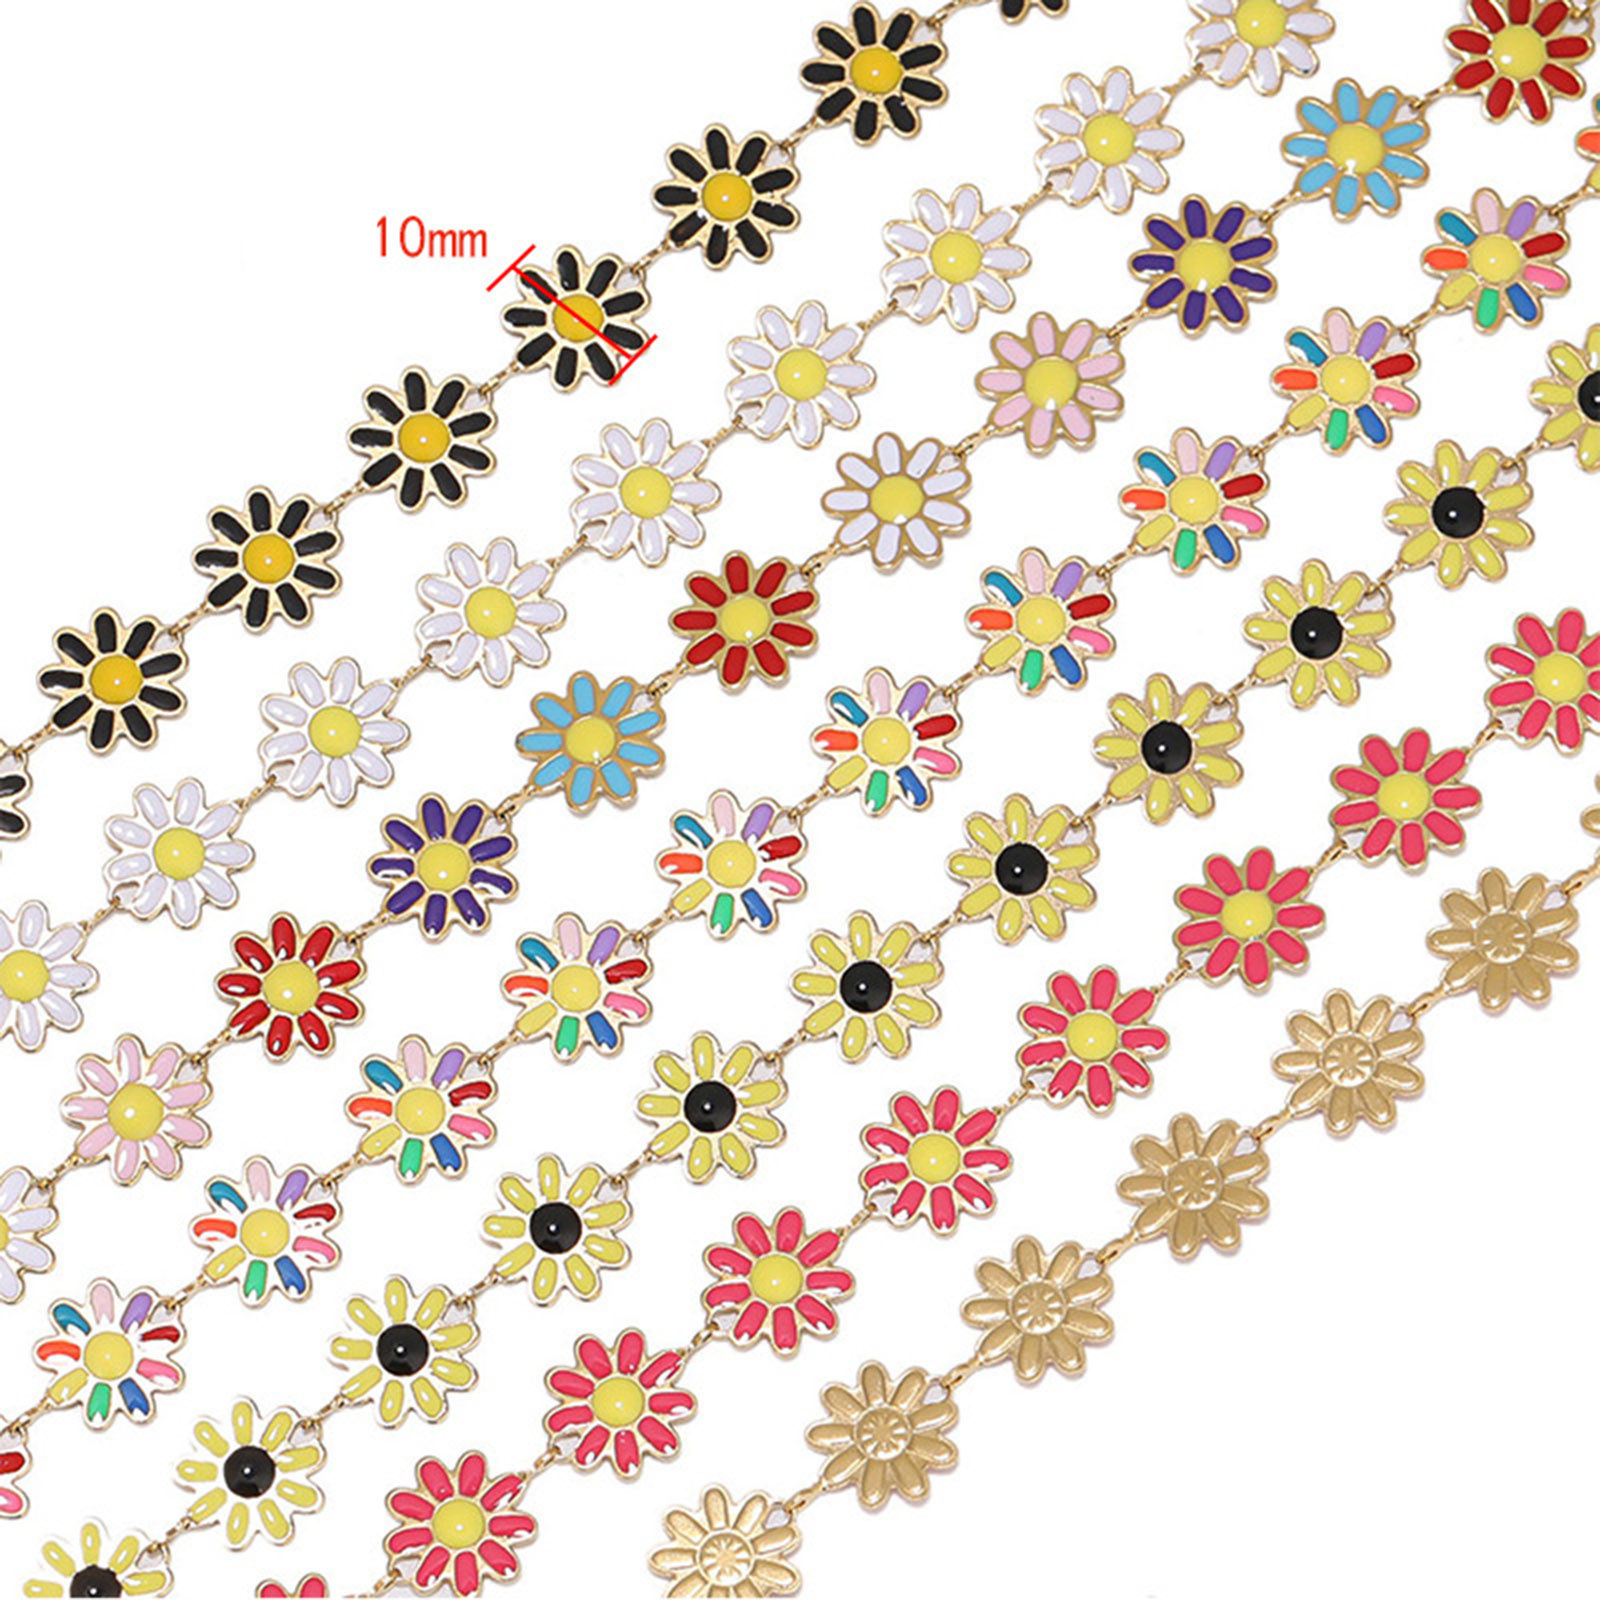 Bild von 304 Edelstahl Handgefertigte Gliederkette Blumen Vergoldet Bunt Emaille 10mm, 1 Meter